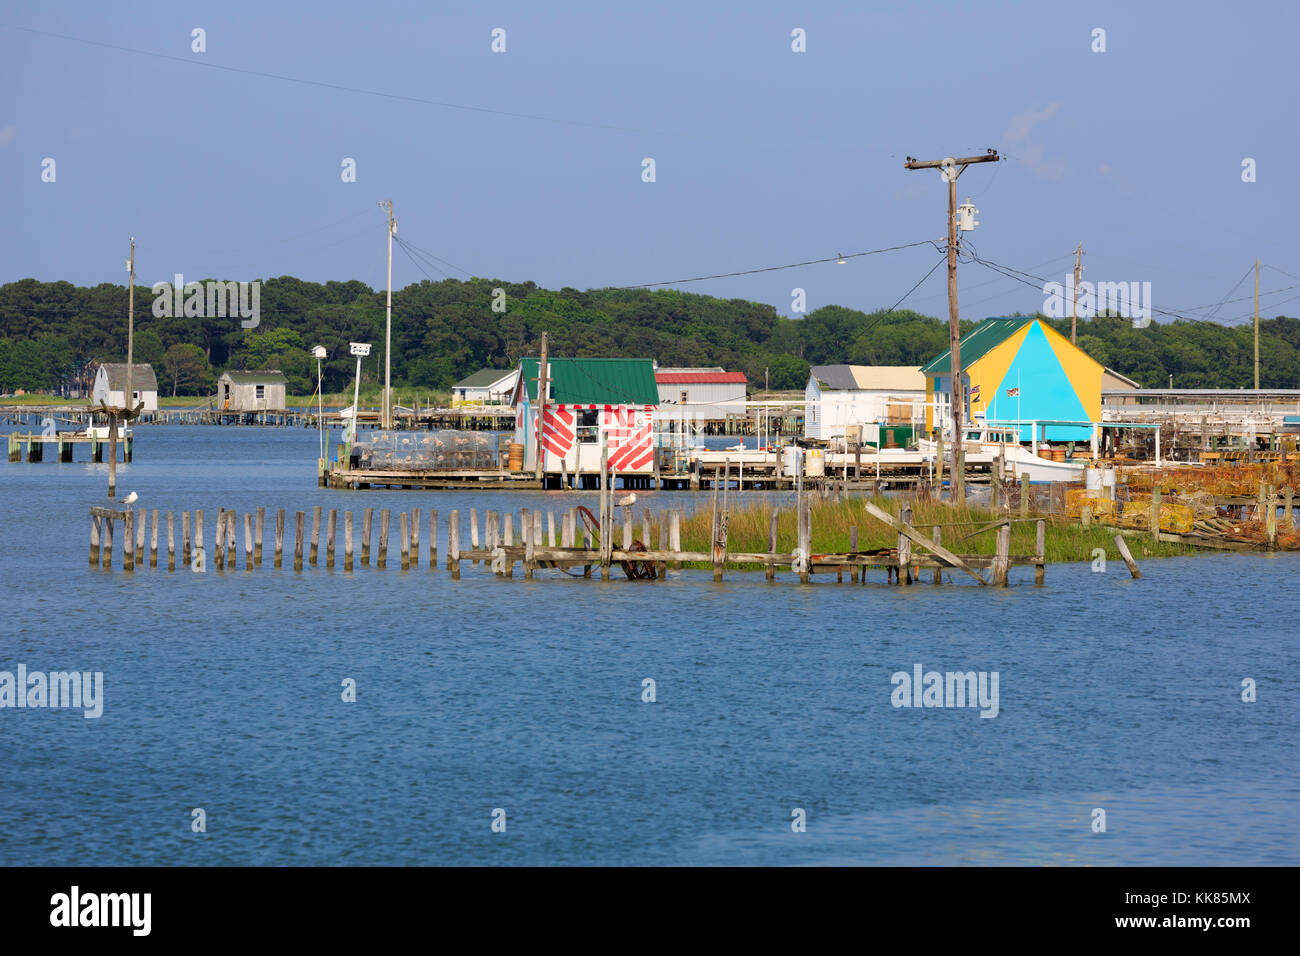 Fishing shanties and docks, Tangier Island, Chesapeake Bay Stock Photo